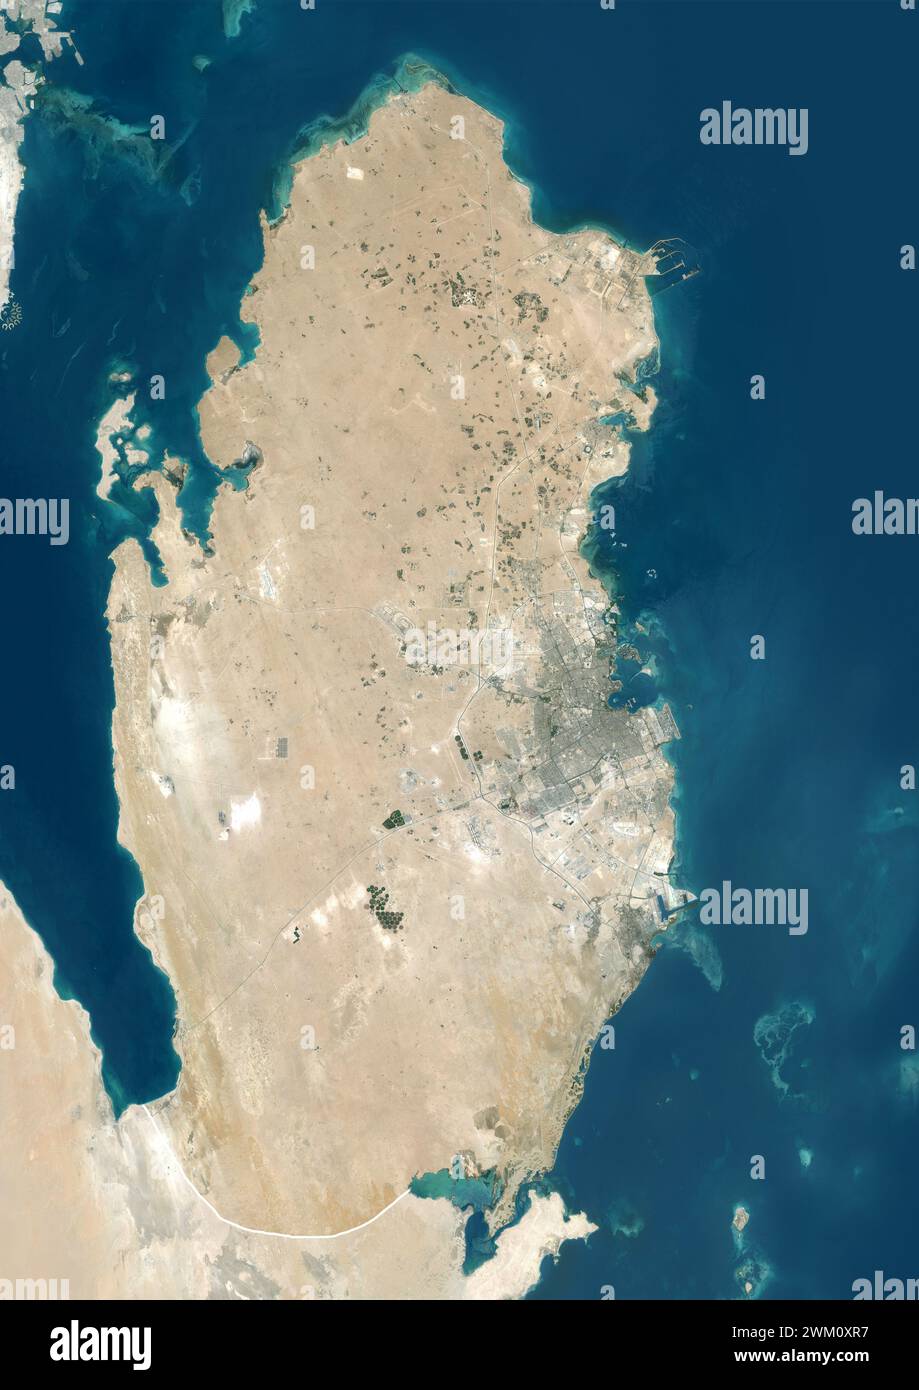 Immagine satellitare a colori del Qatar, con bordi e maschera. Foto Stock